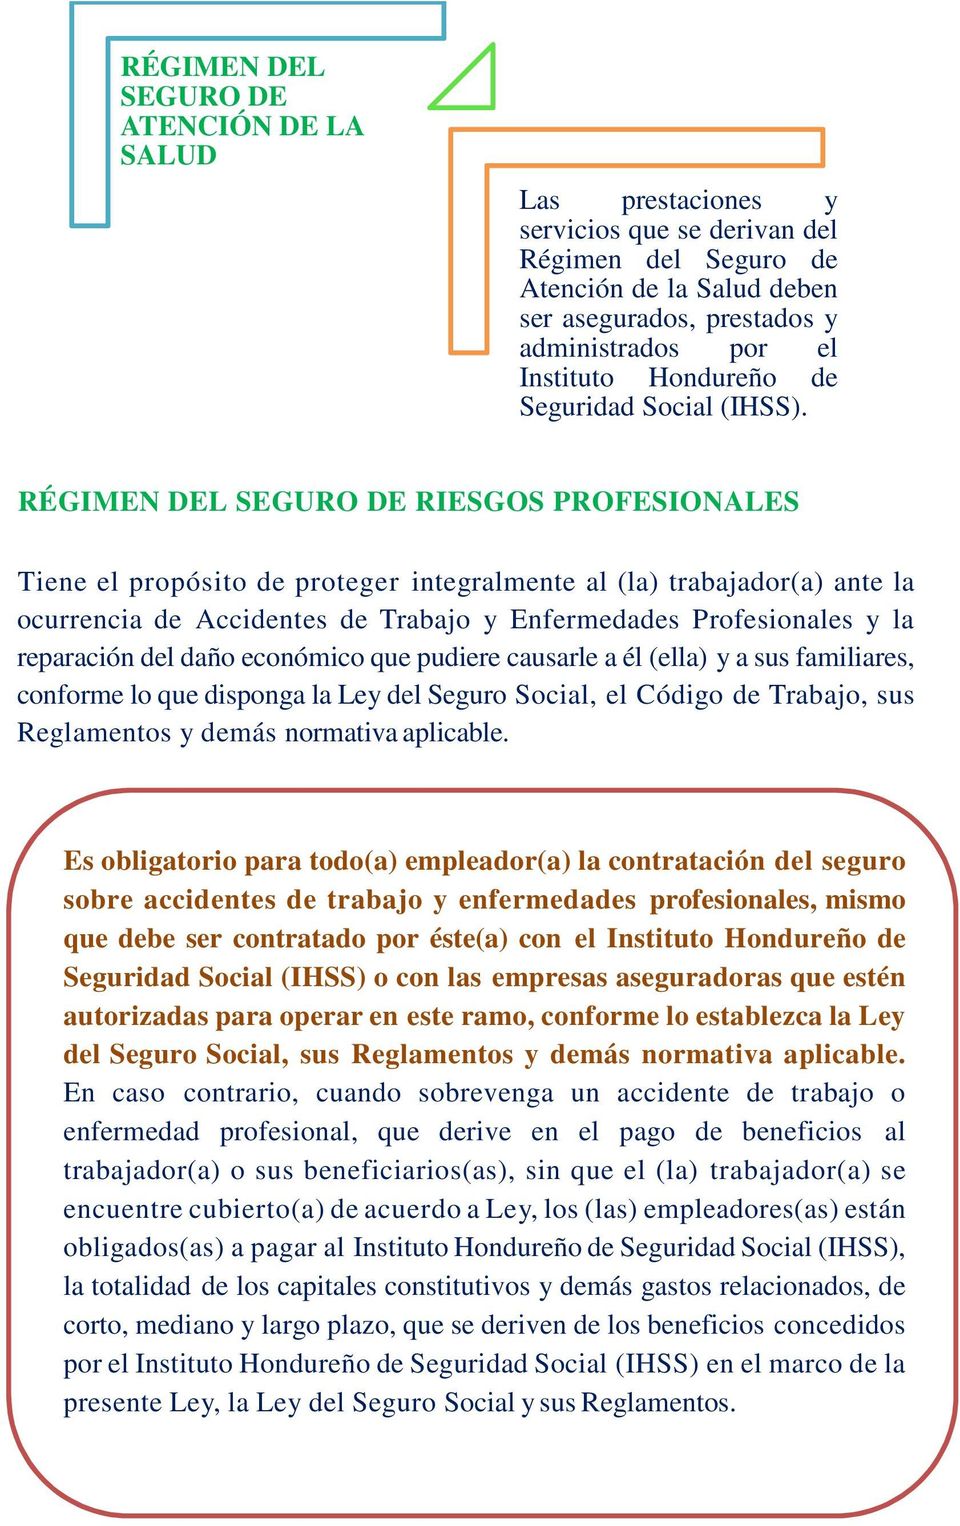 RÉGIMEN DEL SEGURO DE RIESGOS PROFESIONALES Tiene el propósito de proteger integralmente al (la) trabajador(a) ante la ocurrencia de Accidentes de Trabajo y Enfermedades Profesionales y la reparación